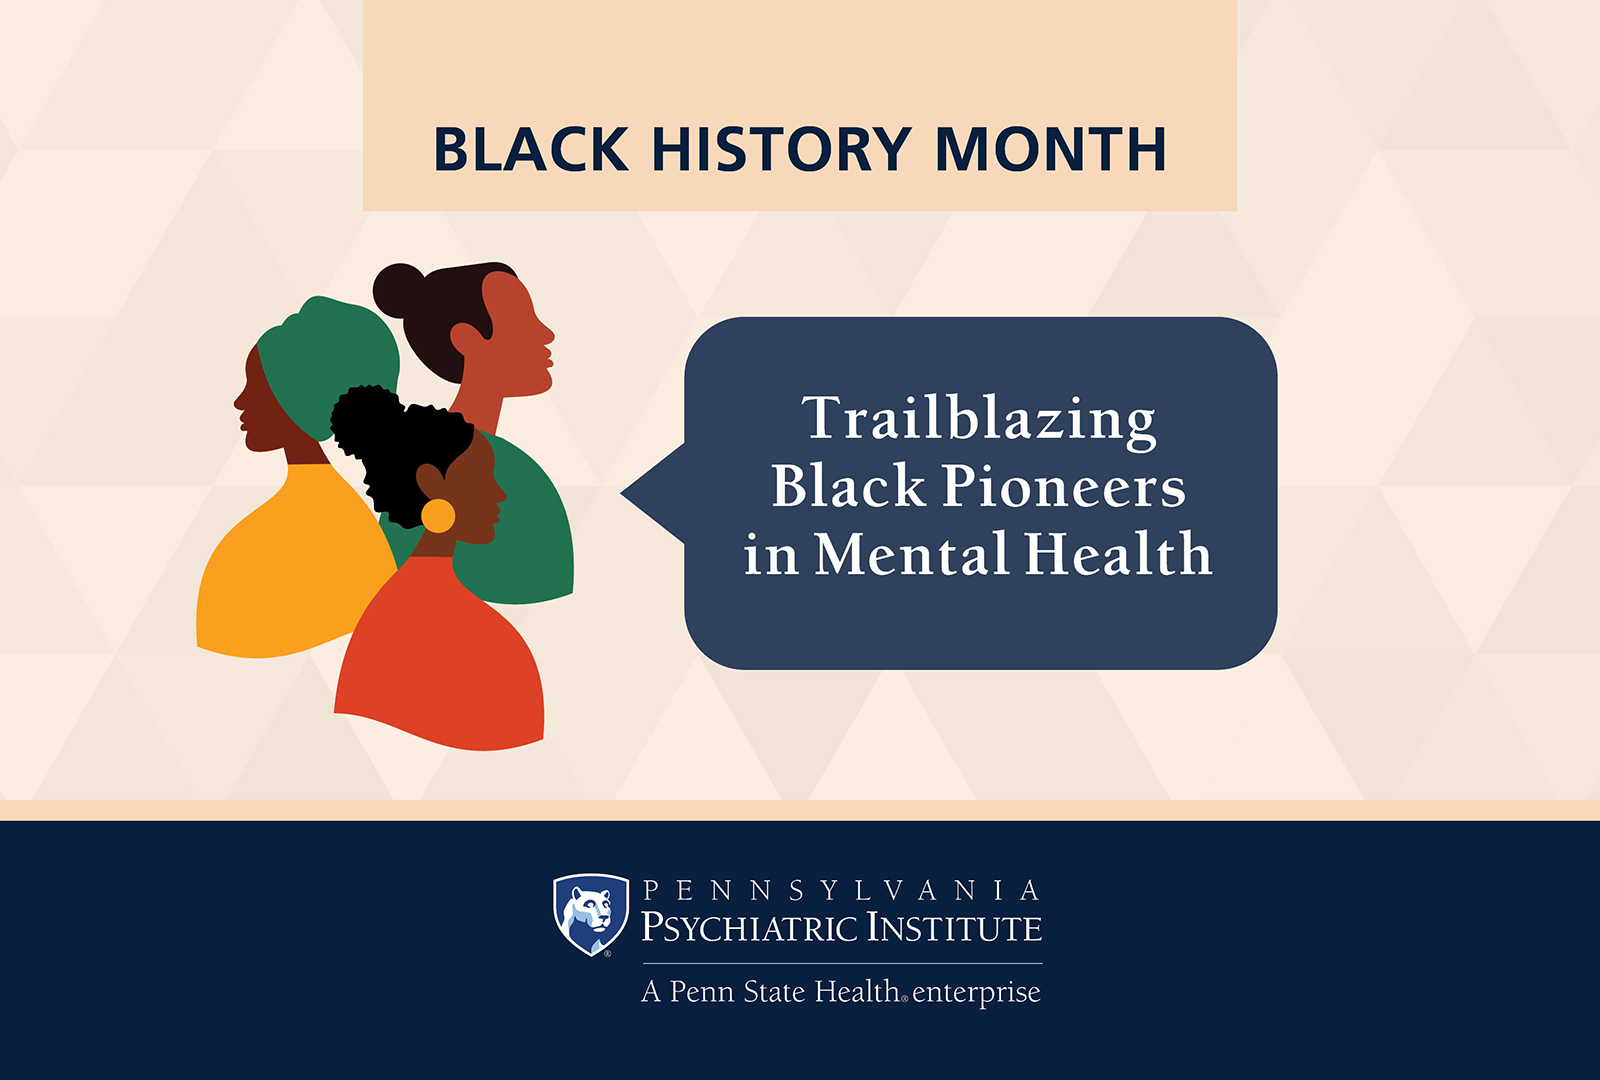 Black History Month: Trailblazing Black Pioneers in Mental Health